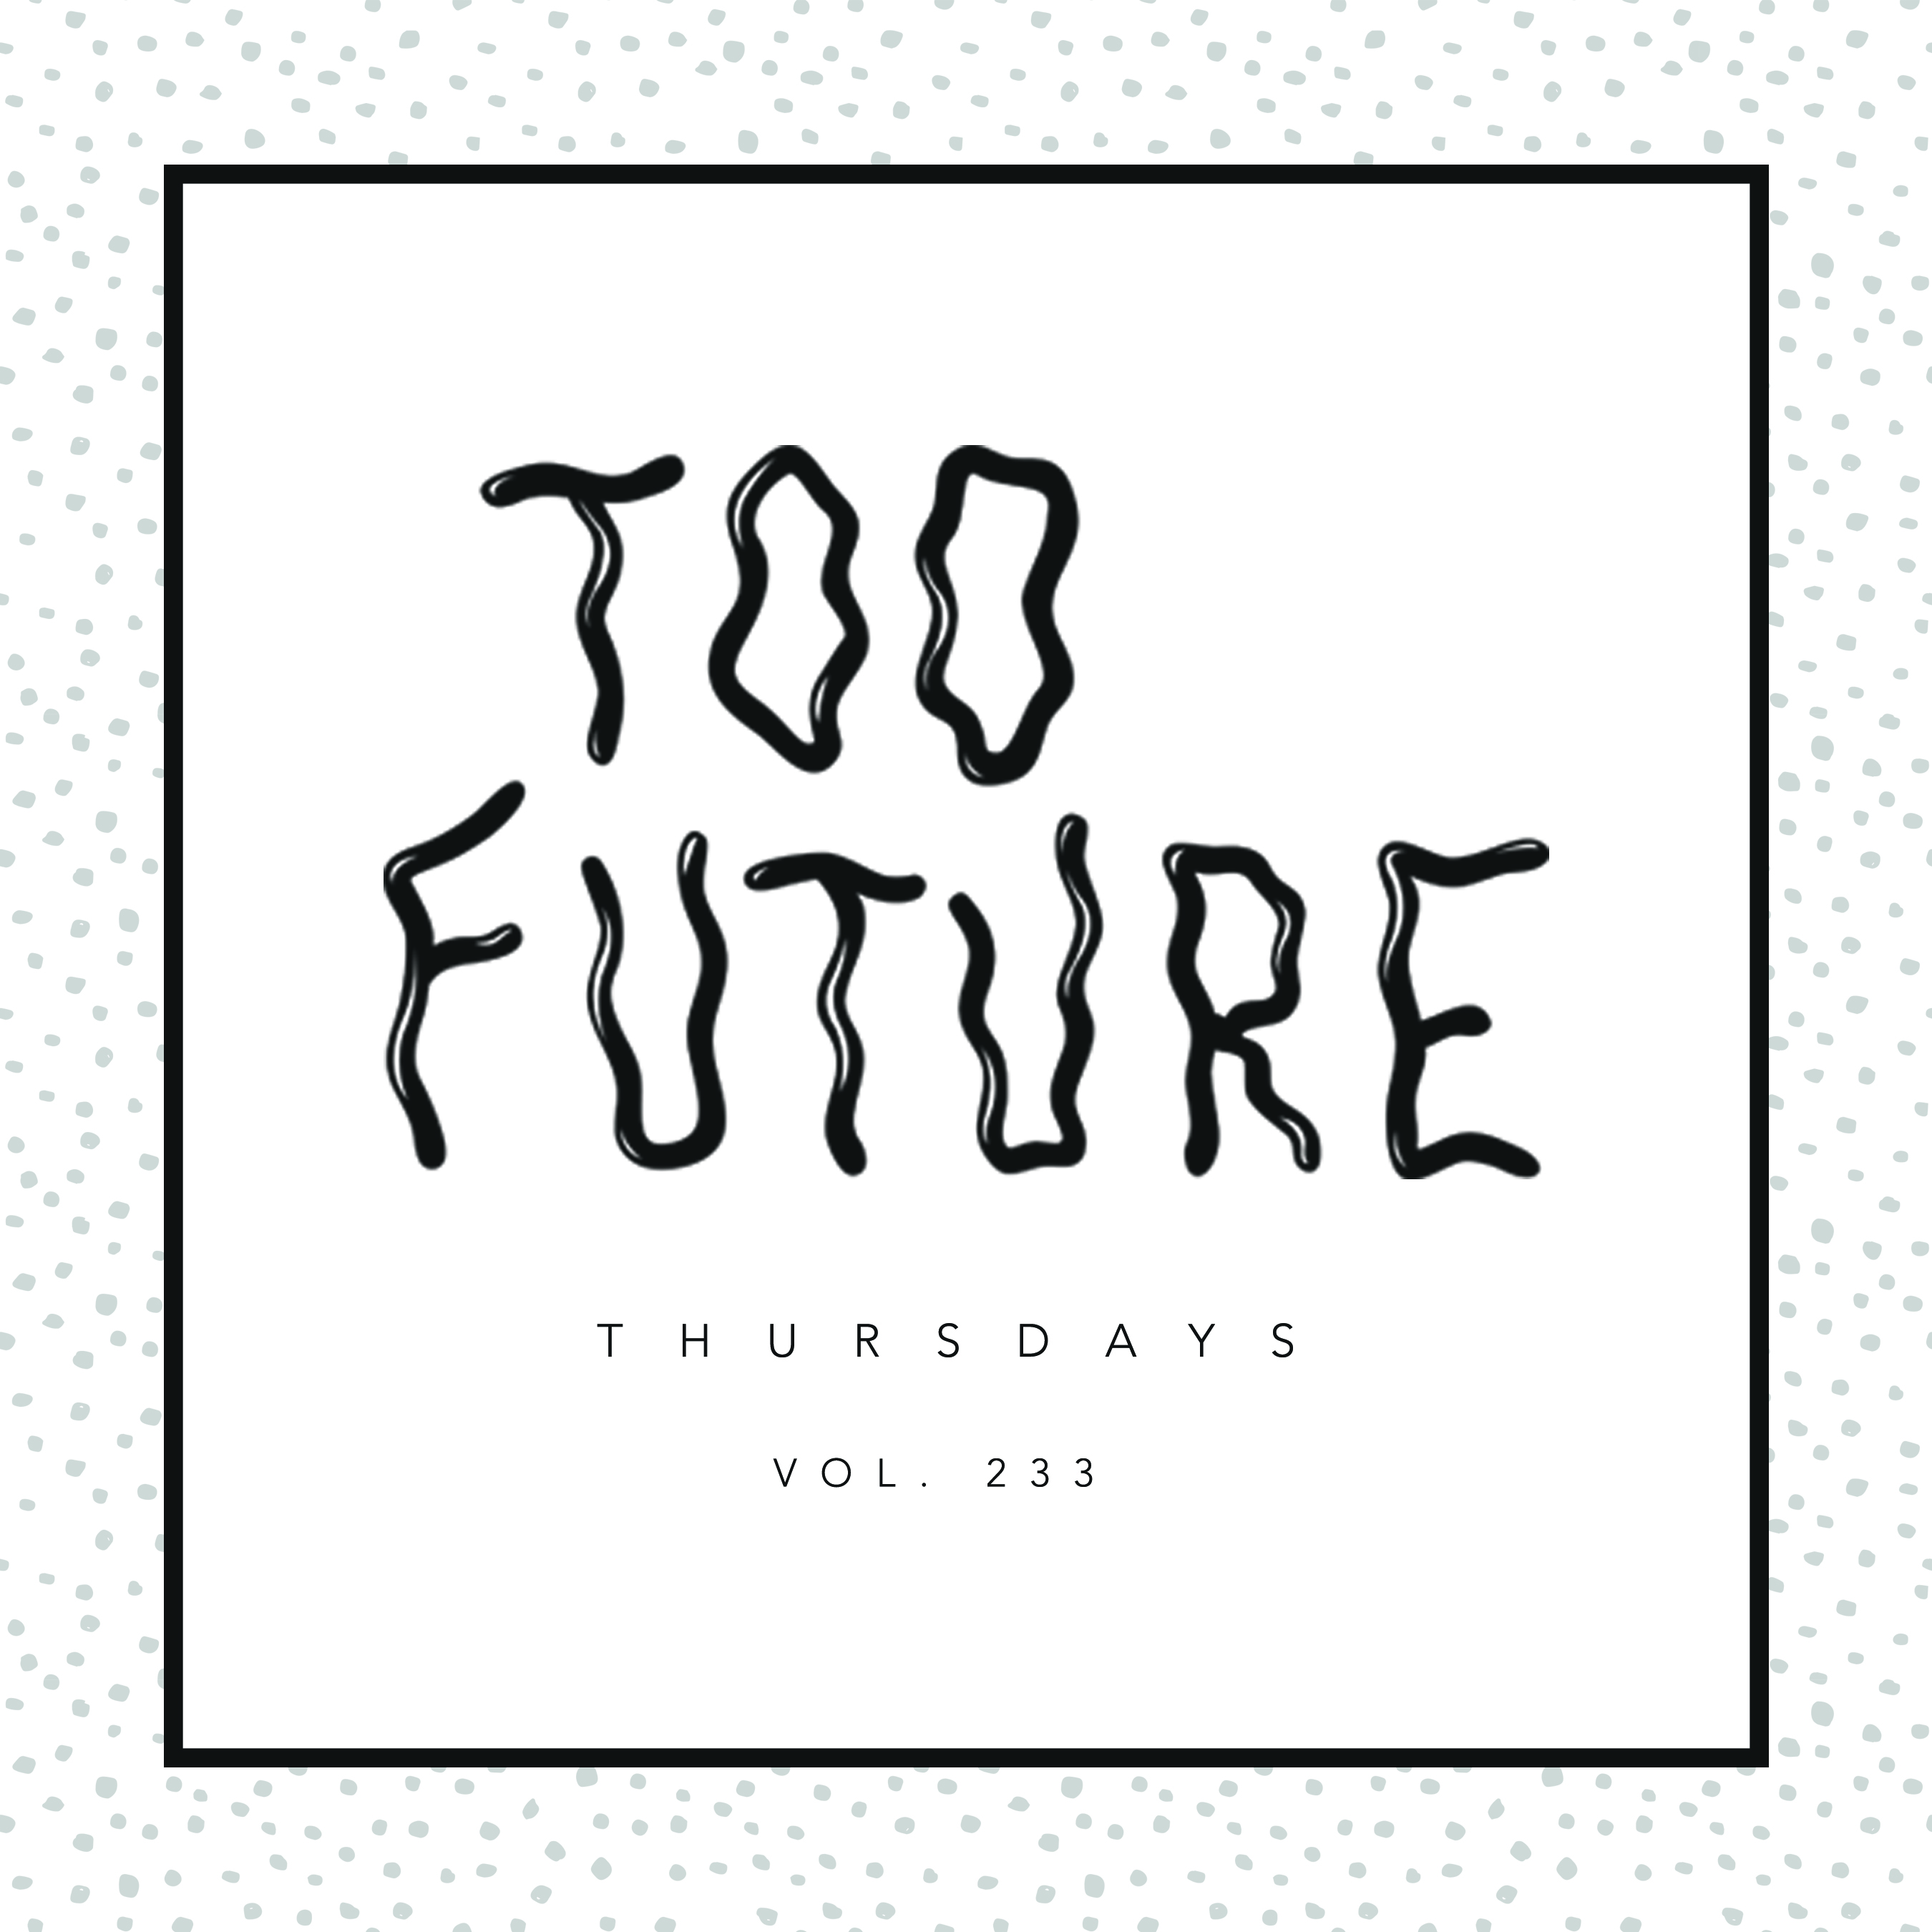 too-future-thursdays-vol-233